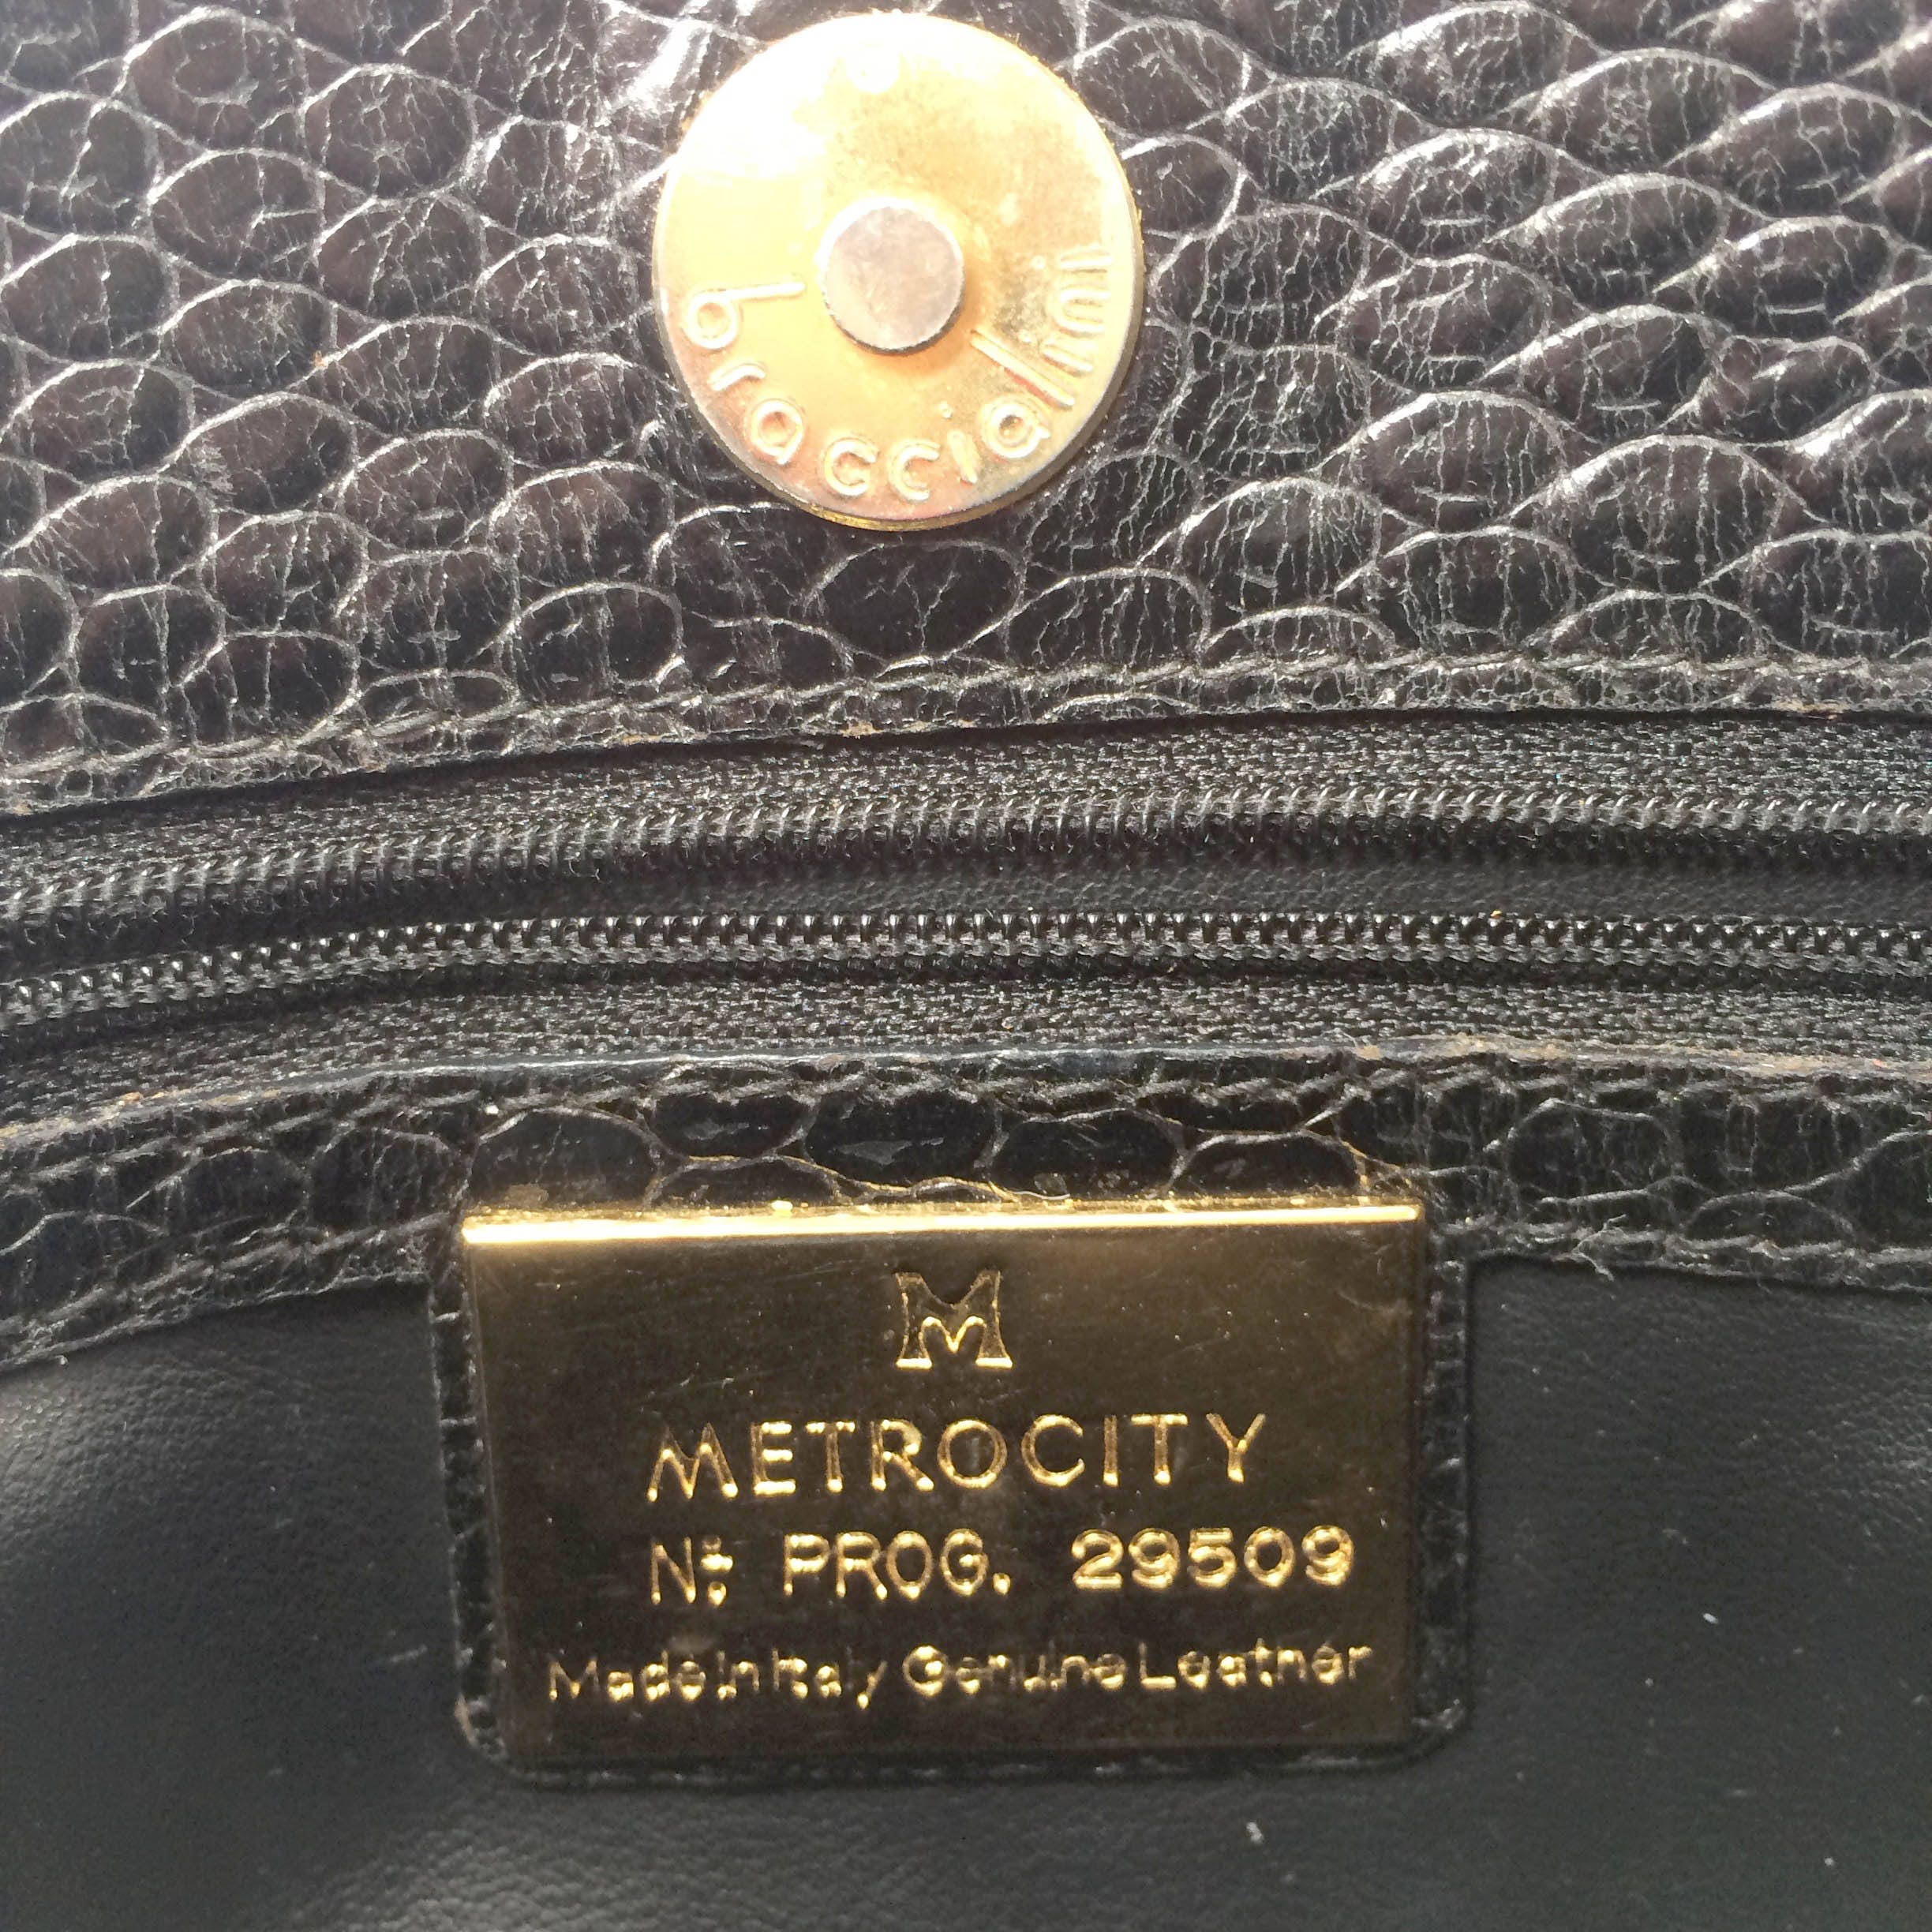 Metrocity, Bags